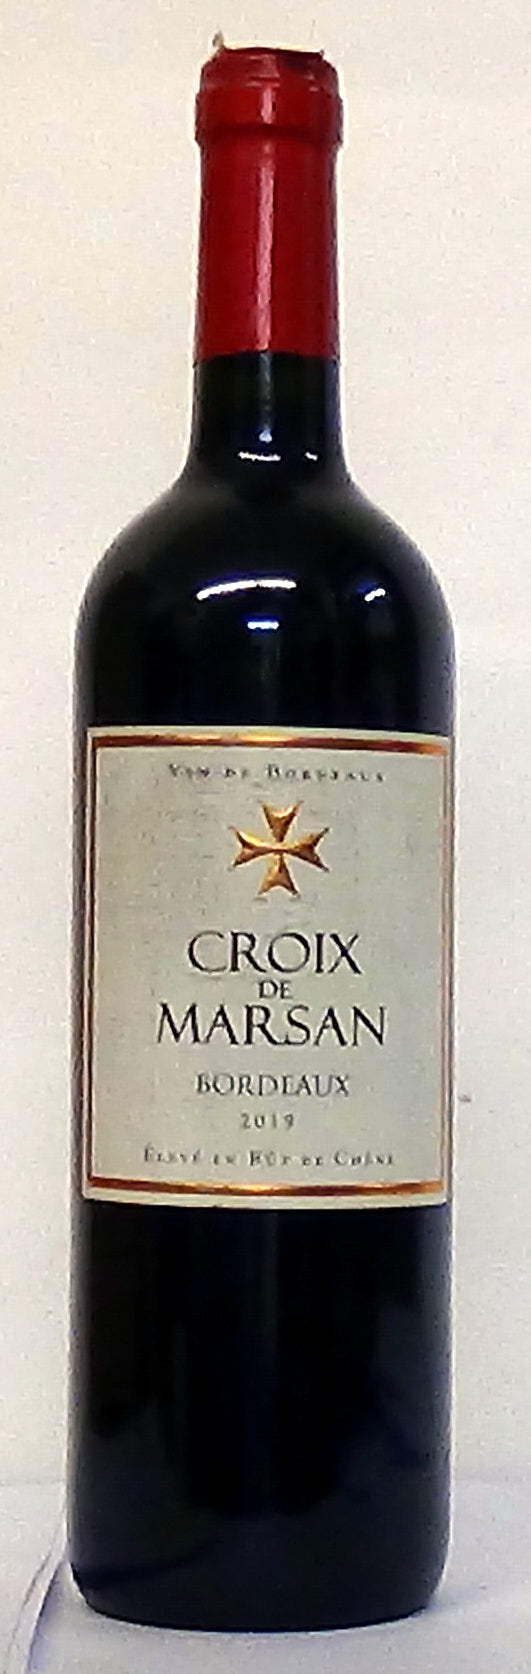 2019 Croix de Marsan Bordeaux